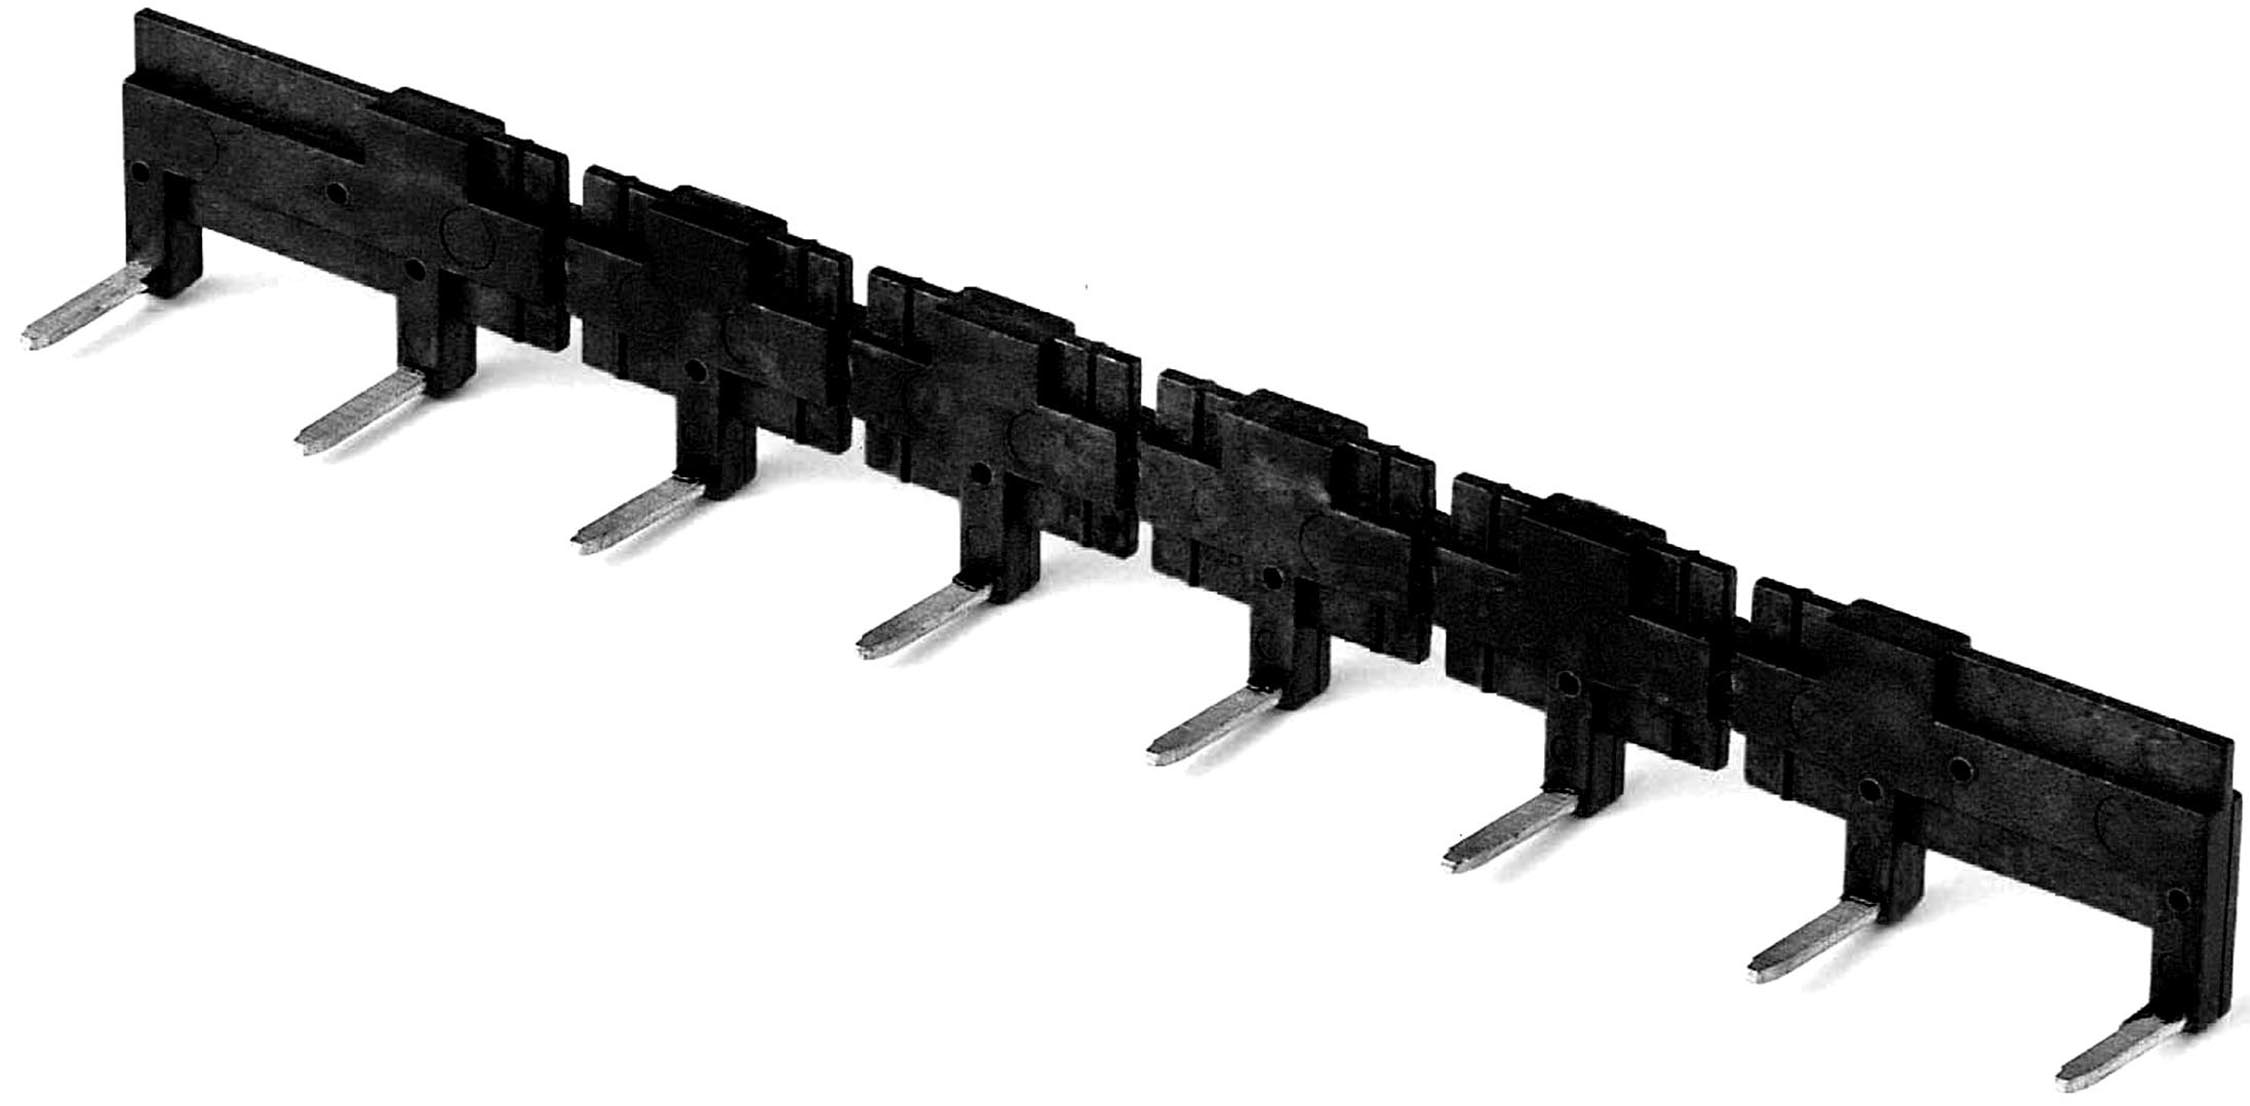 Aansluitbrug, zwart, 8-polig 10 A 250 V, voor contactdozen 95.85.30 en 95.95.30